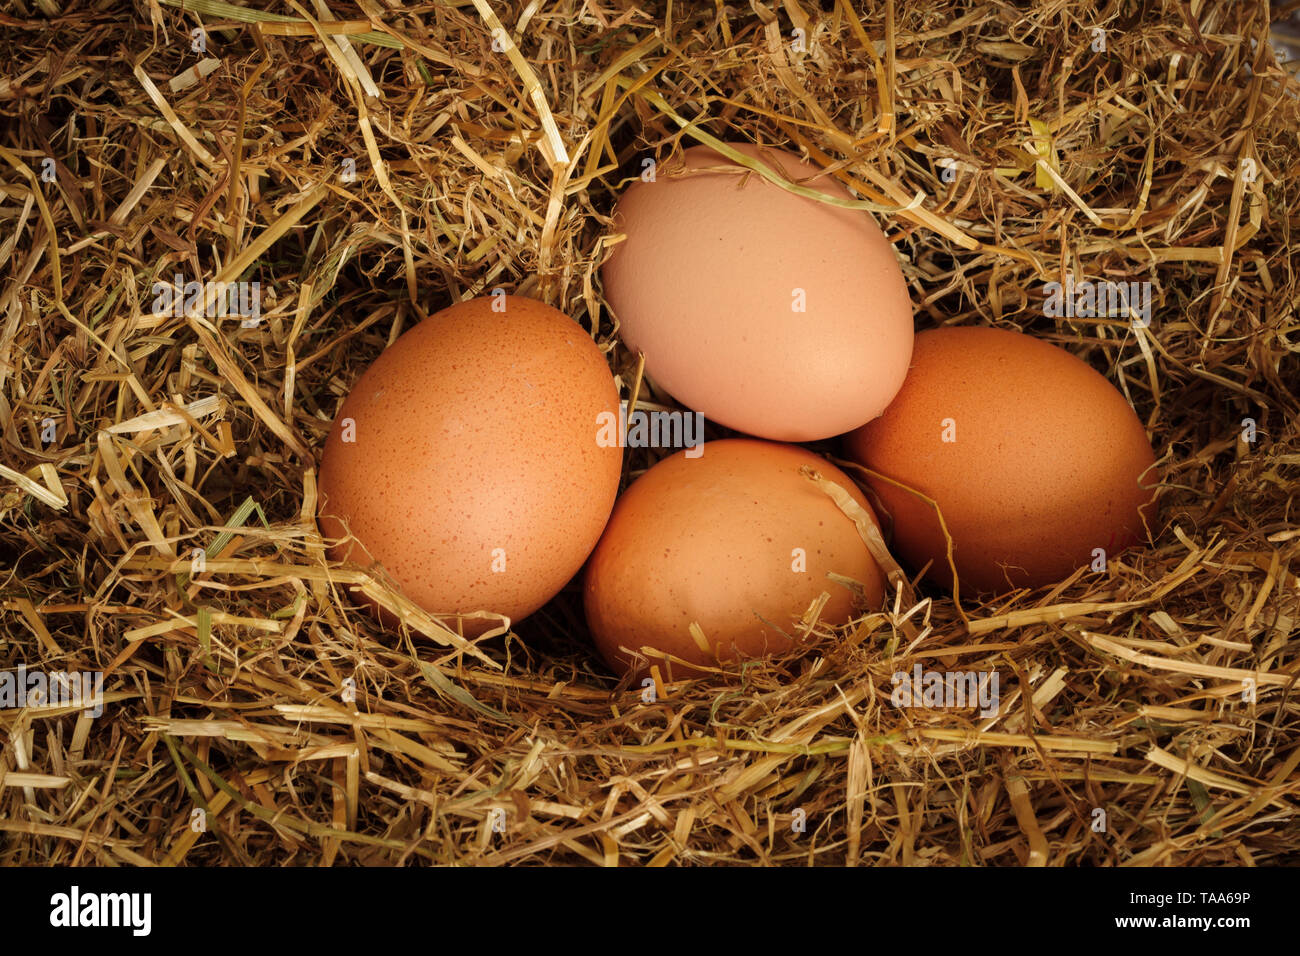 Recién sembradas free range brown gallinas huevos anidado en una cama de paja Foto de stock